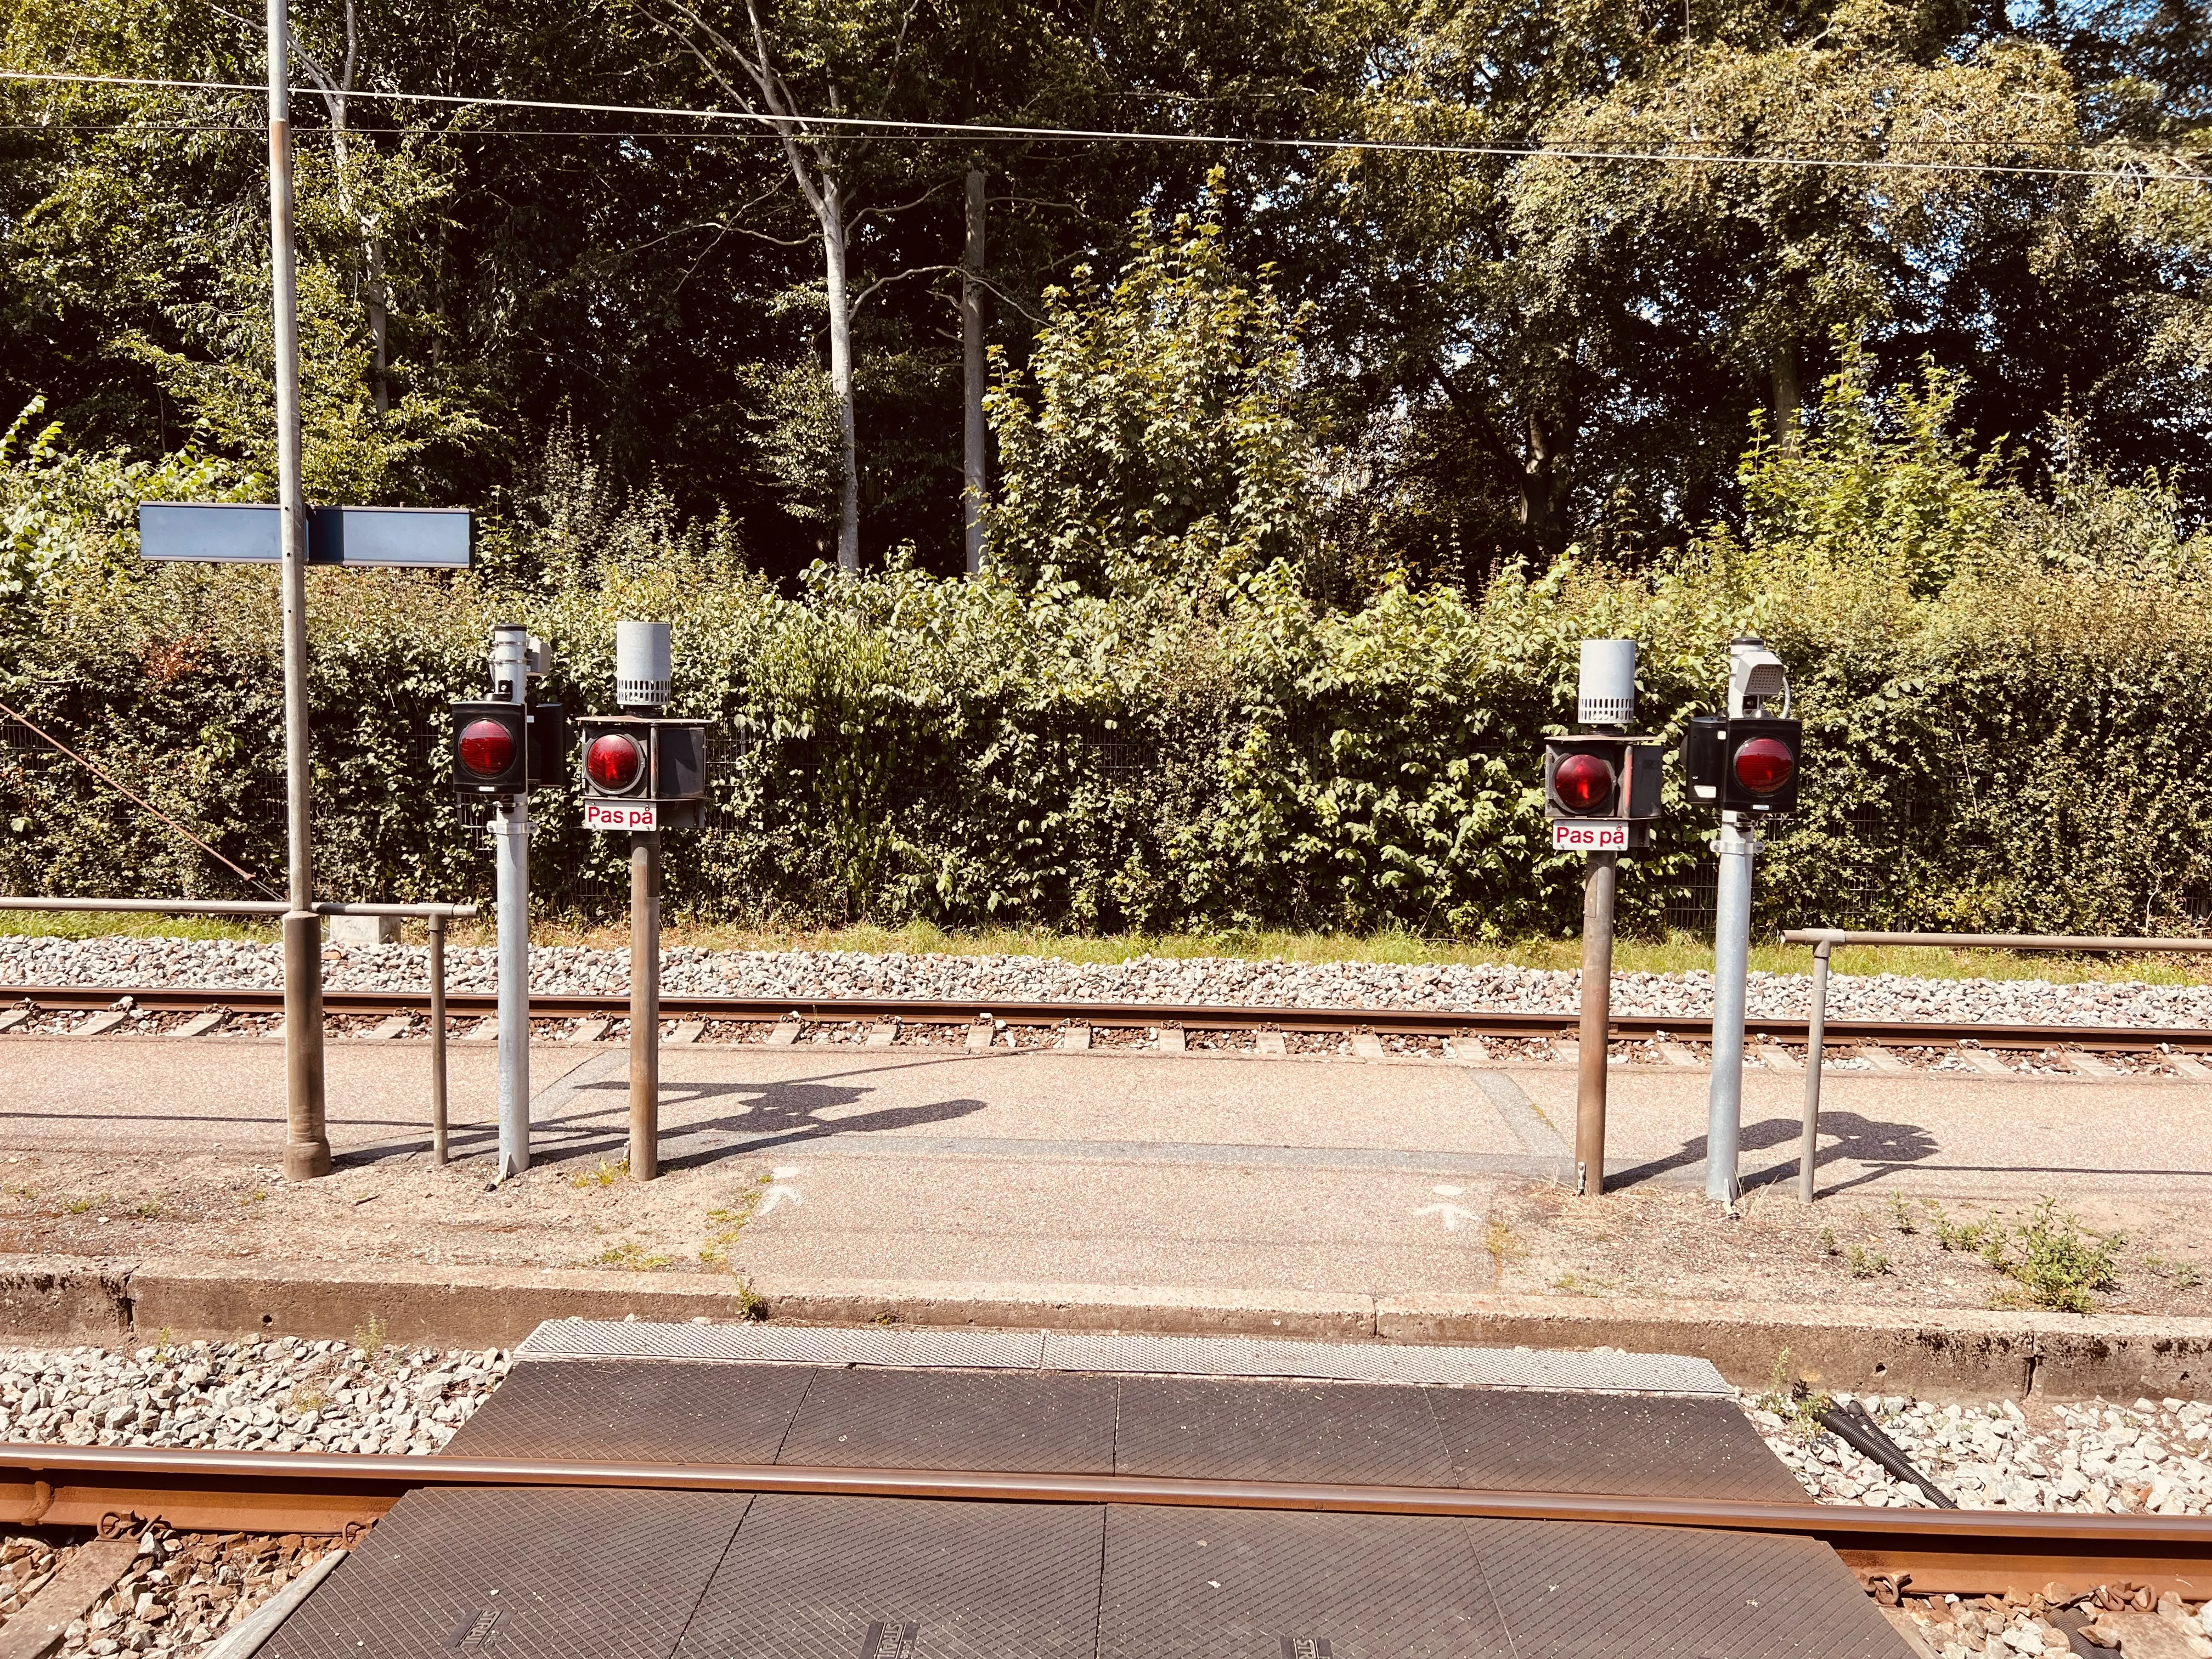 Billede af Holme-Olstrup Station.